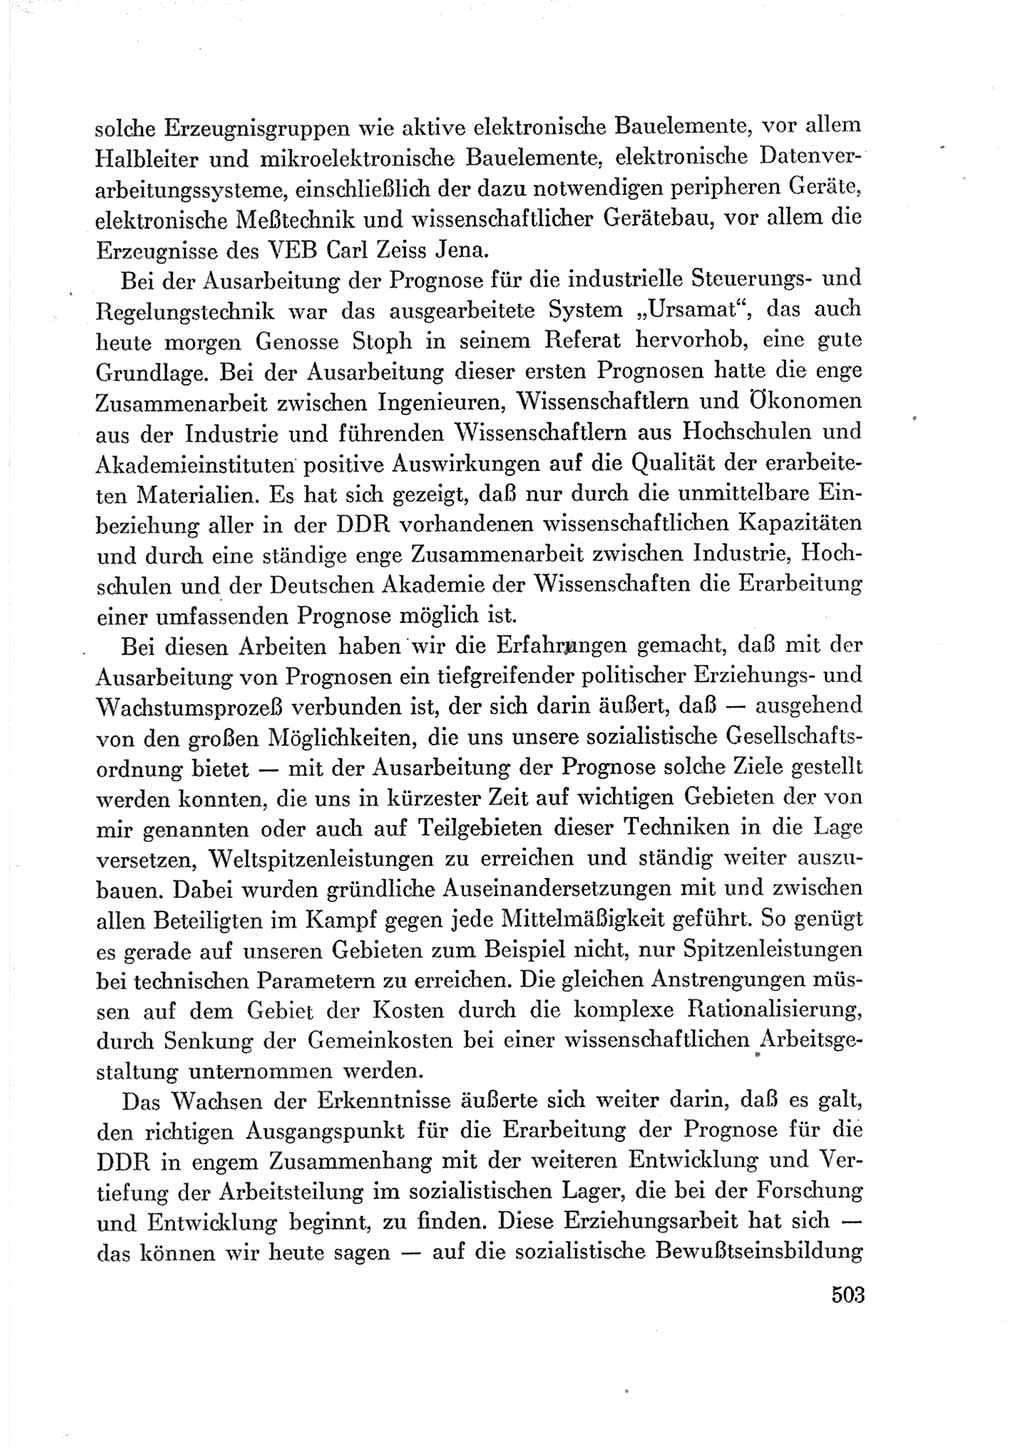 Protokoll der Verhandlungen des Ⅶ. Parteitages der Sozialistischen Einheitspartei Deutschlands (SED) [Deutsche Demokratische Republik (DDR)] 1967, Band Ⅰ, Seite 503 (Prot. Verh. Ⅶ. PT SED DDR 1967, Bd. Ⅰ, S. 503)